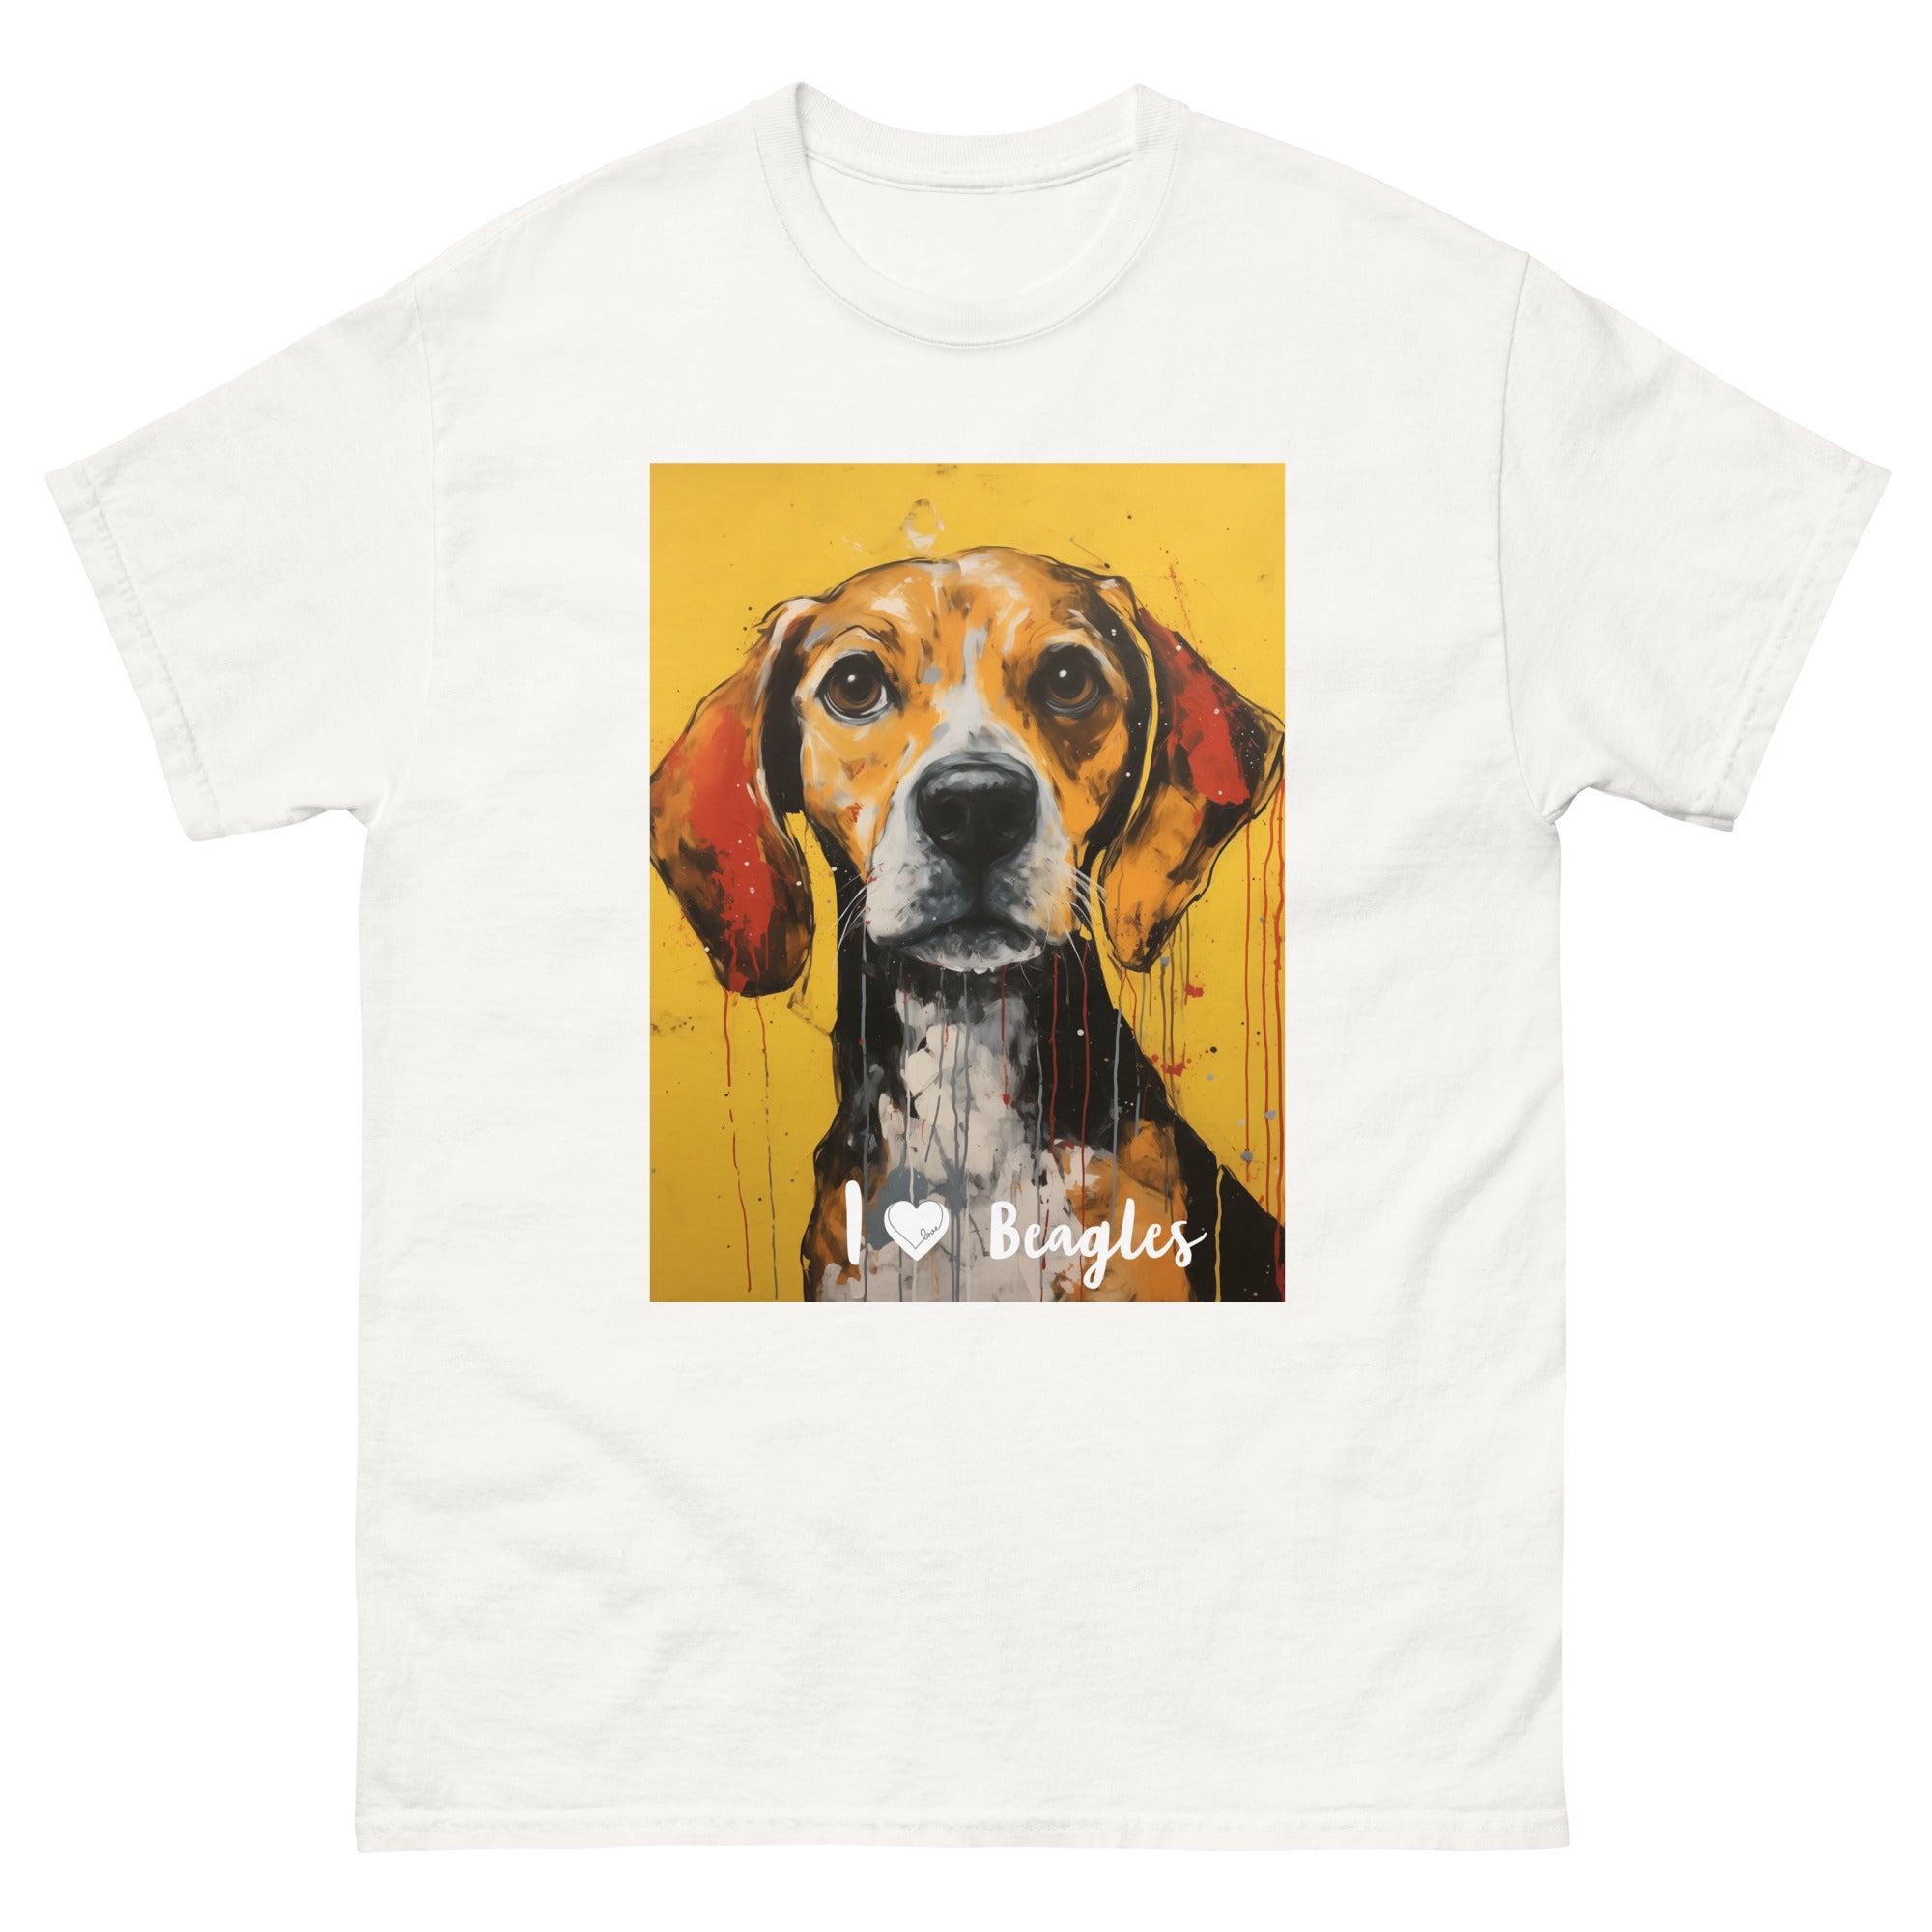 Men's classic tee - I ❤ DOGS - Beagle